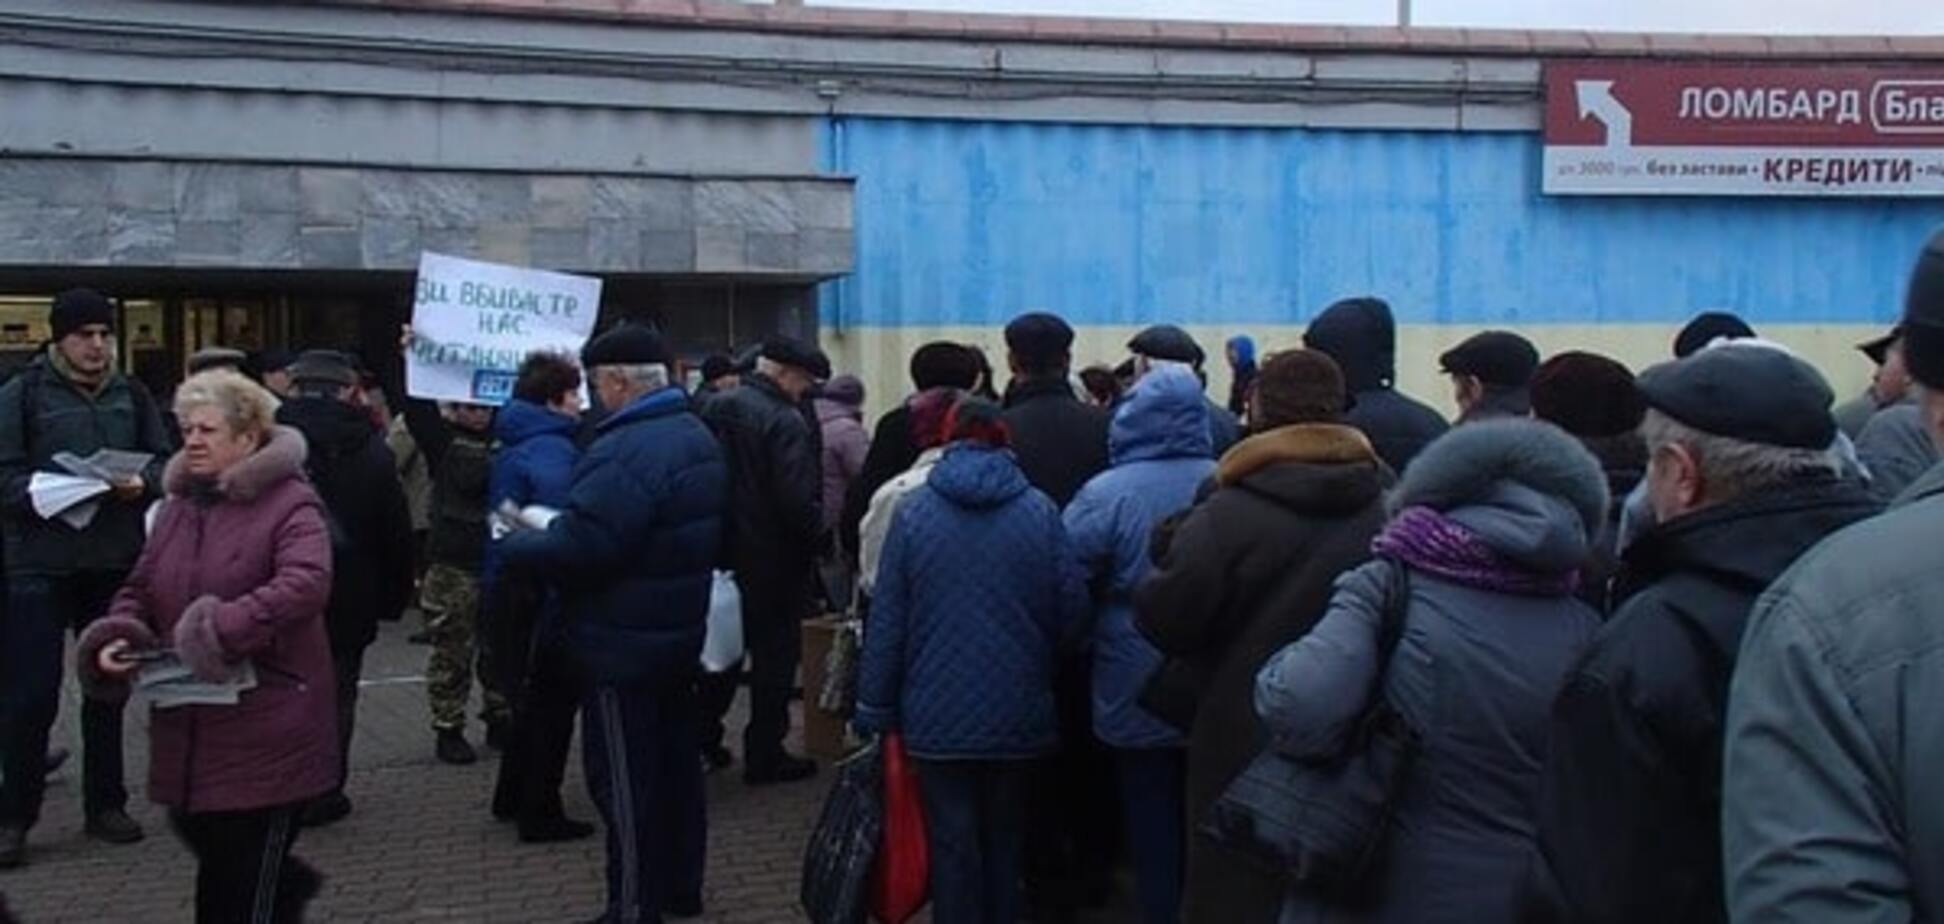 Пропаганда хуже пуль: в Киеве участницы АТО призвали не читать газету 'Вести'